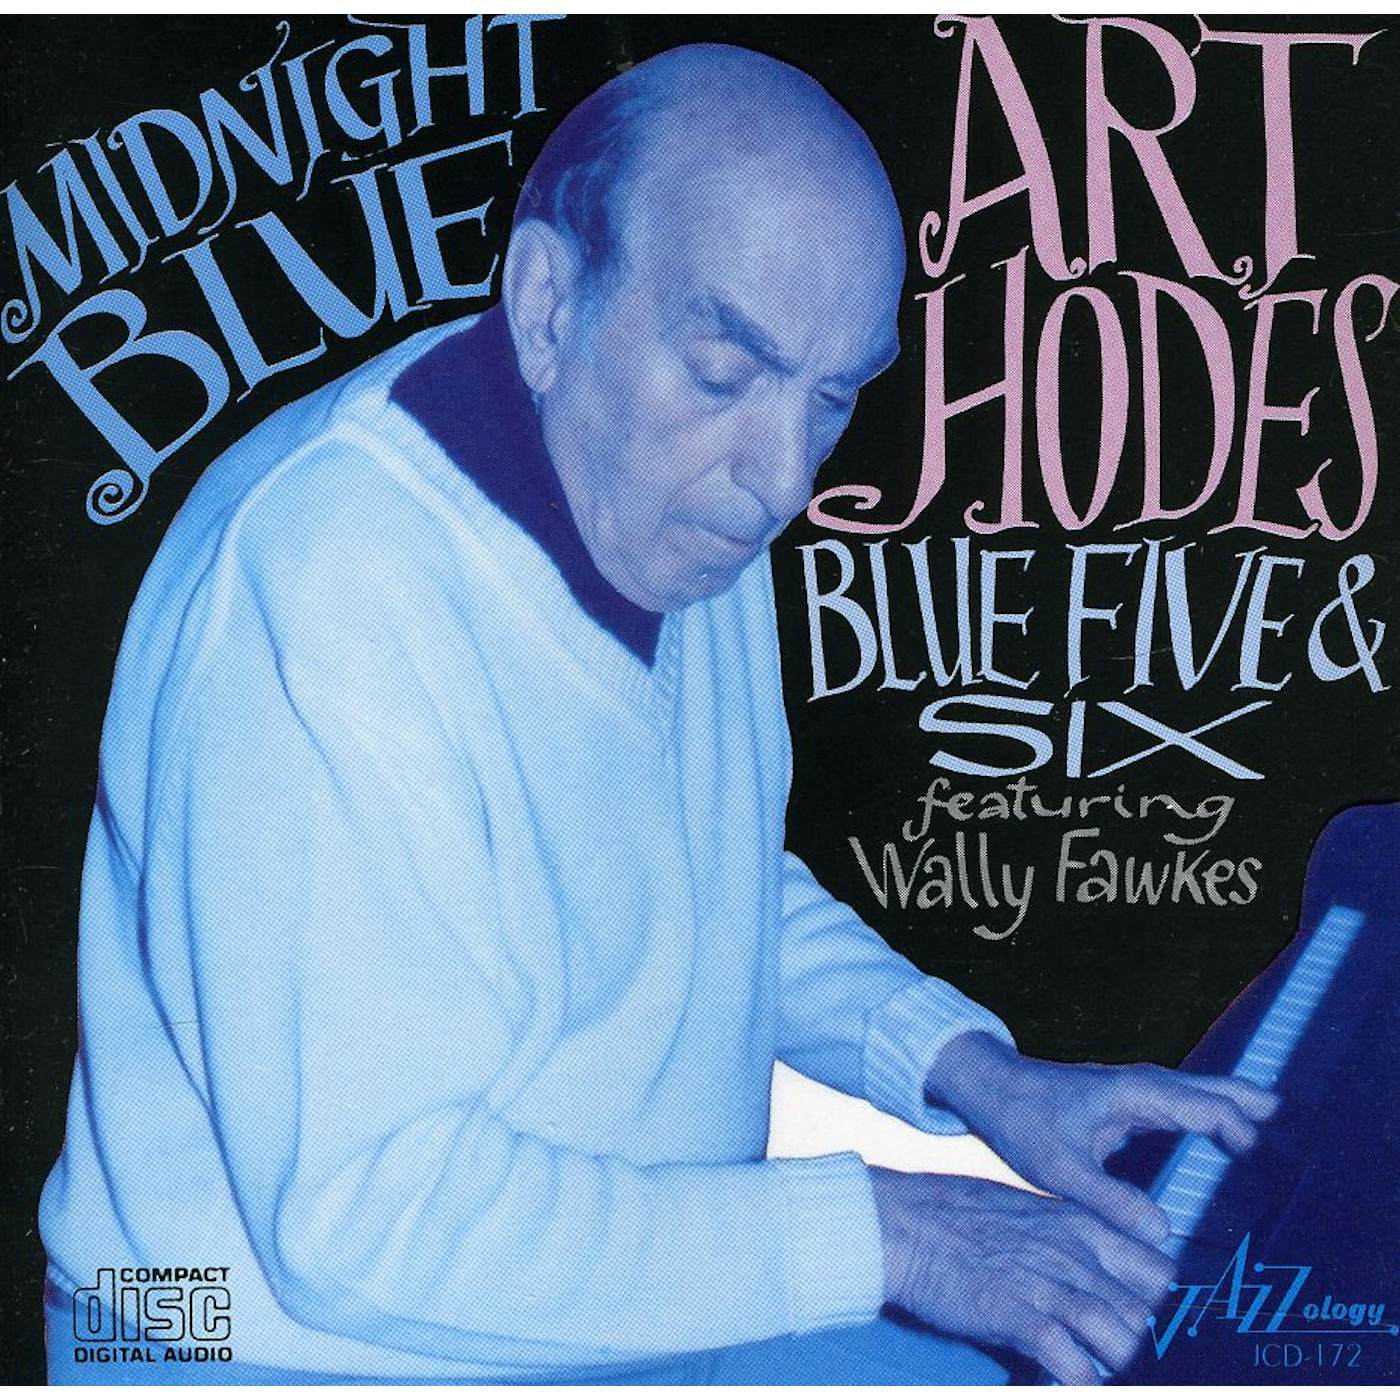 Art Hodes BLUES 5 & 6 CD